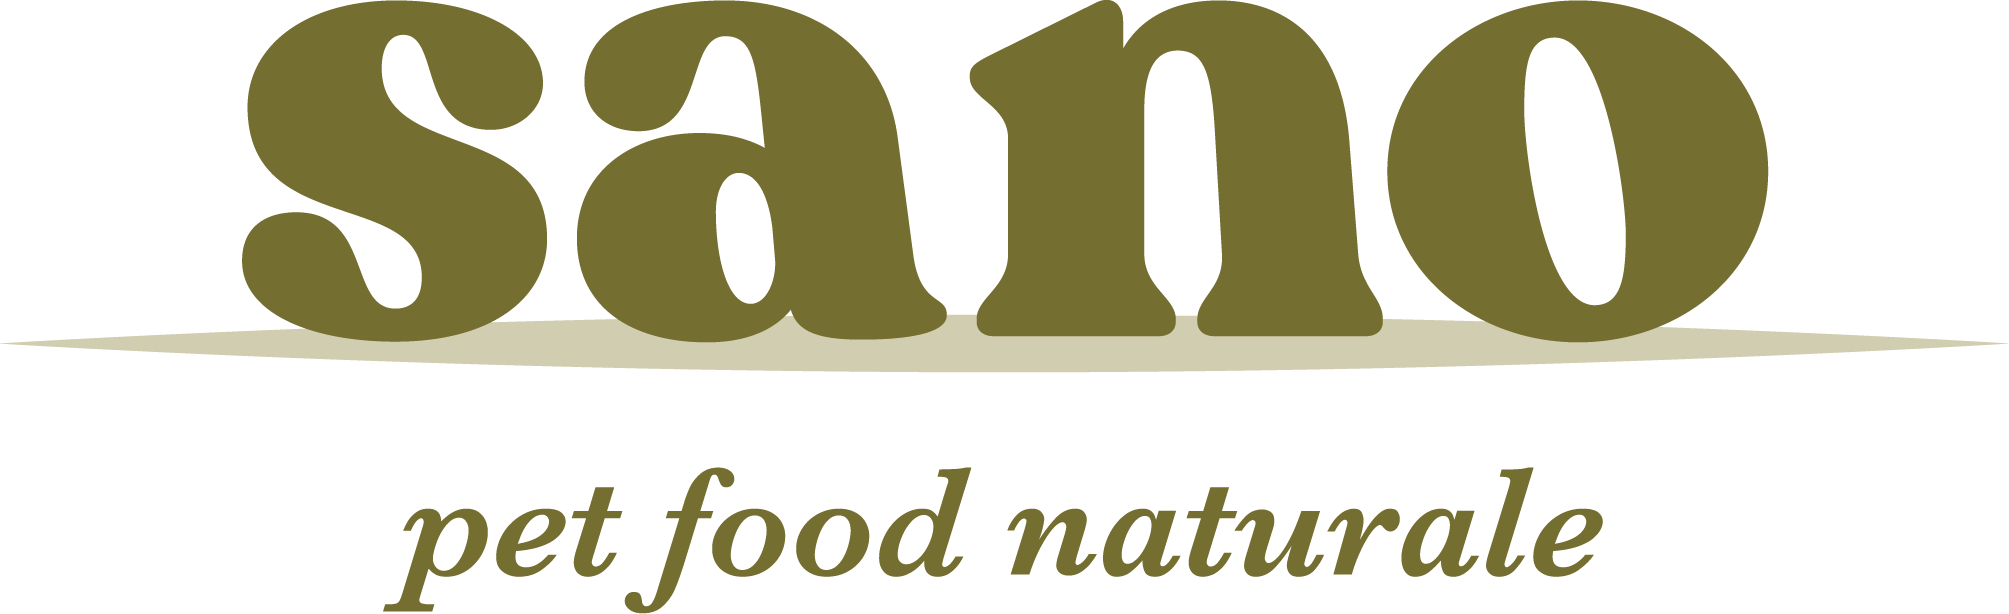 Sano - Pet Food Naturale